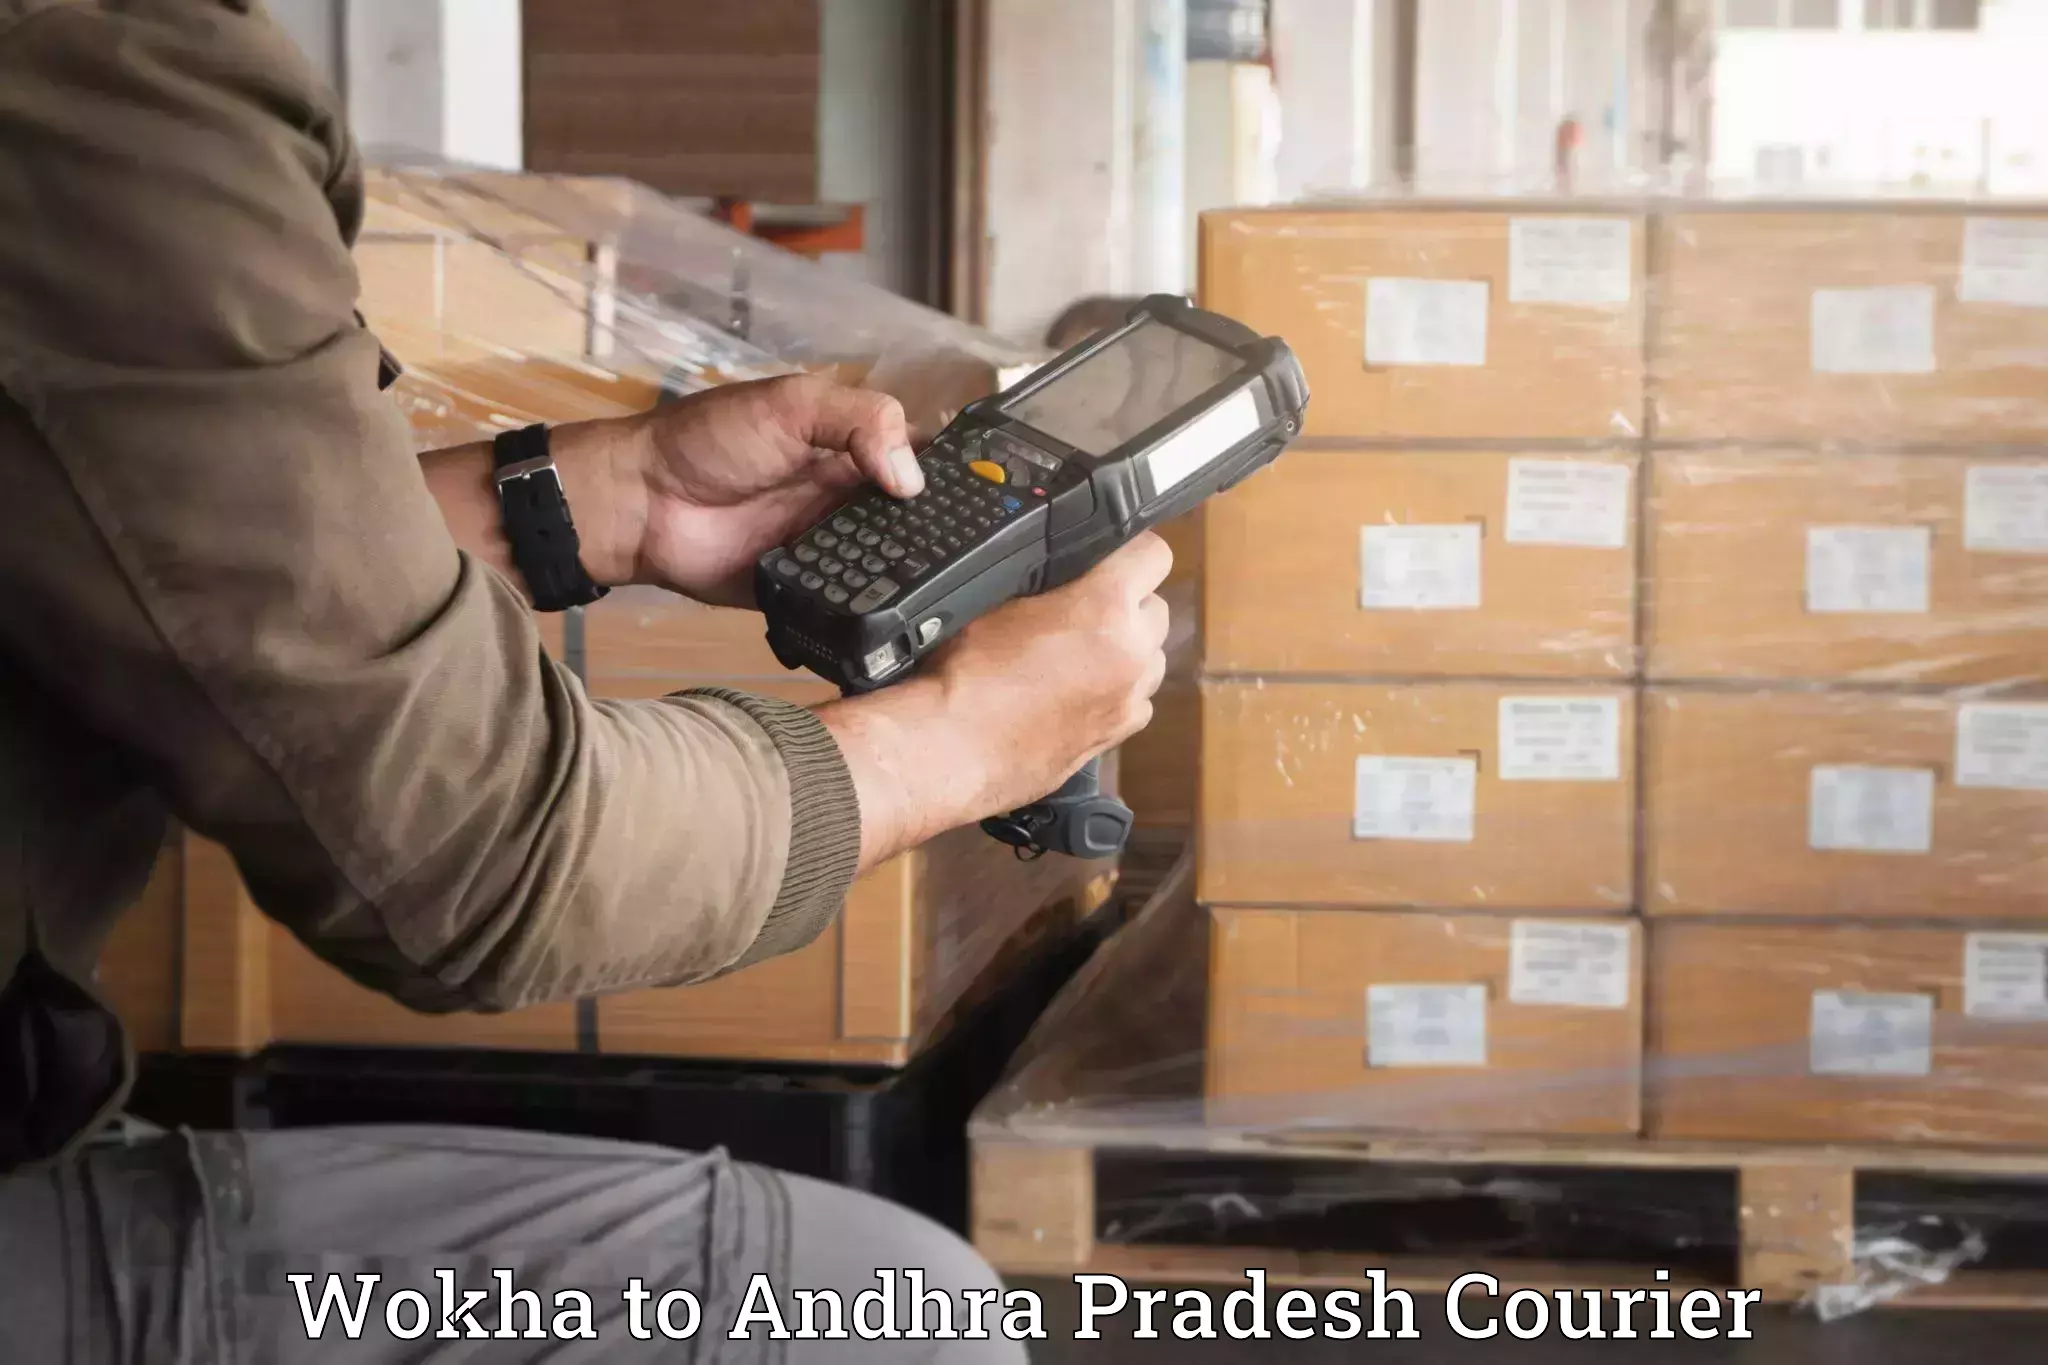 Skilled furniture transporters Wokha to Palasa